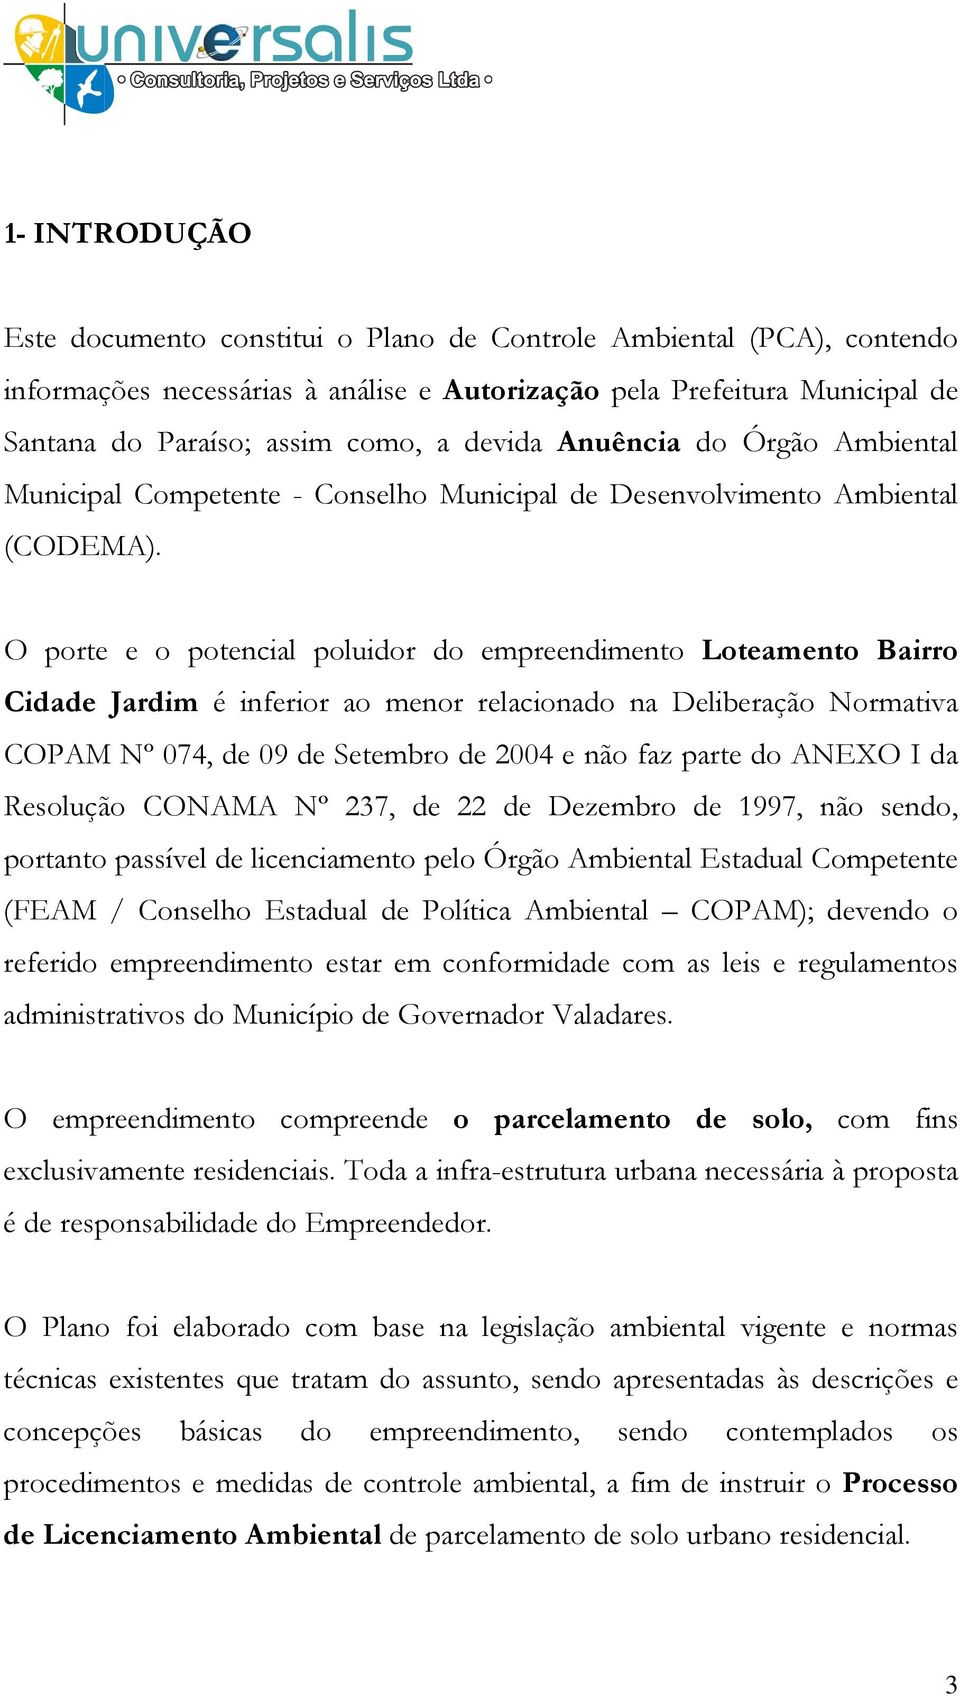 O porte e o potencial poluidor do empreendimento Loteamento Bairro Cidade Jardim é inferior ao menor relacionado na Deliberação Normativa COPAM Nº 074, de 09 de Setembro de 2004 e não faz parte do